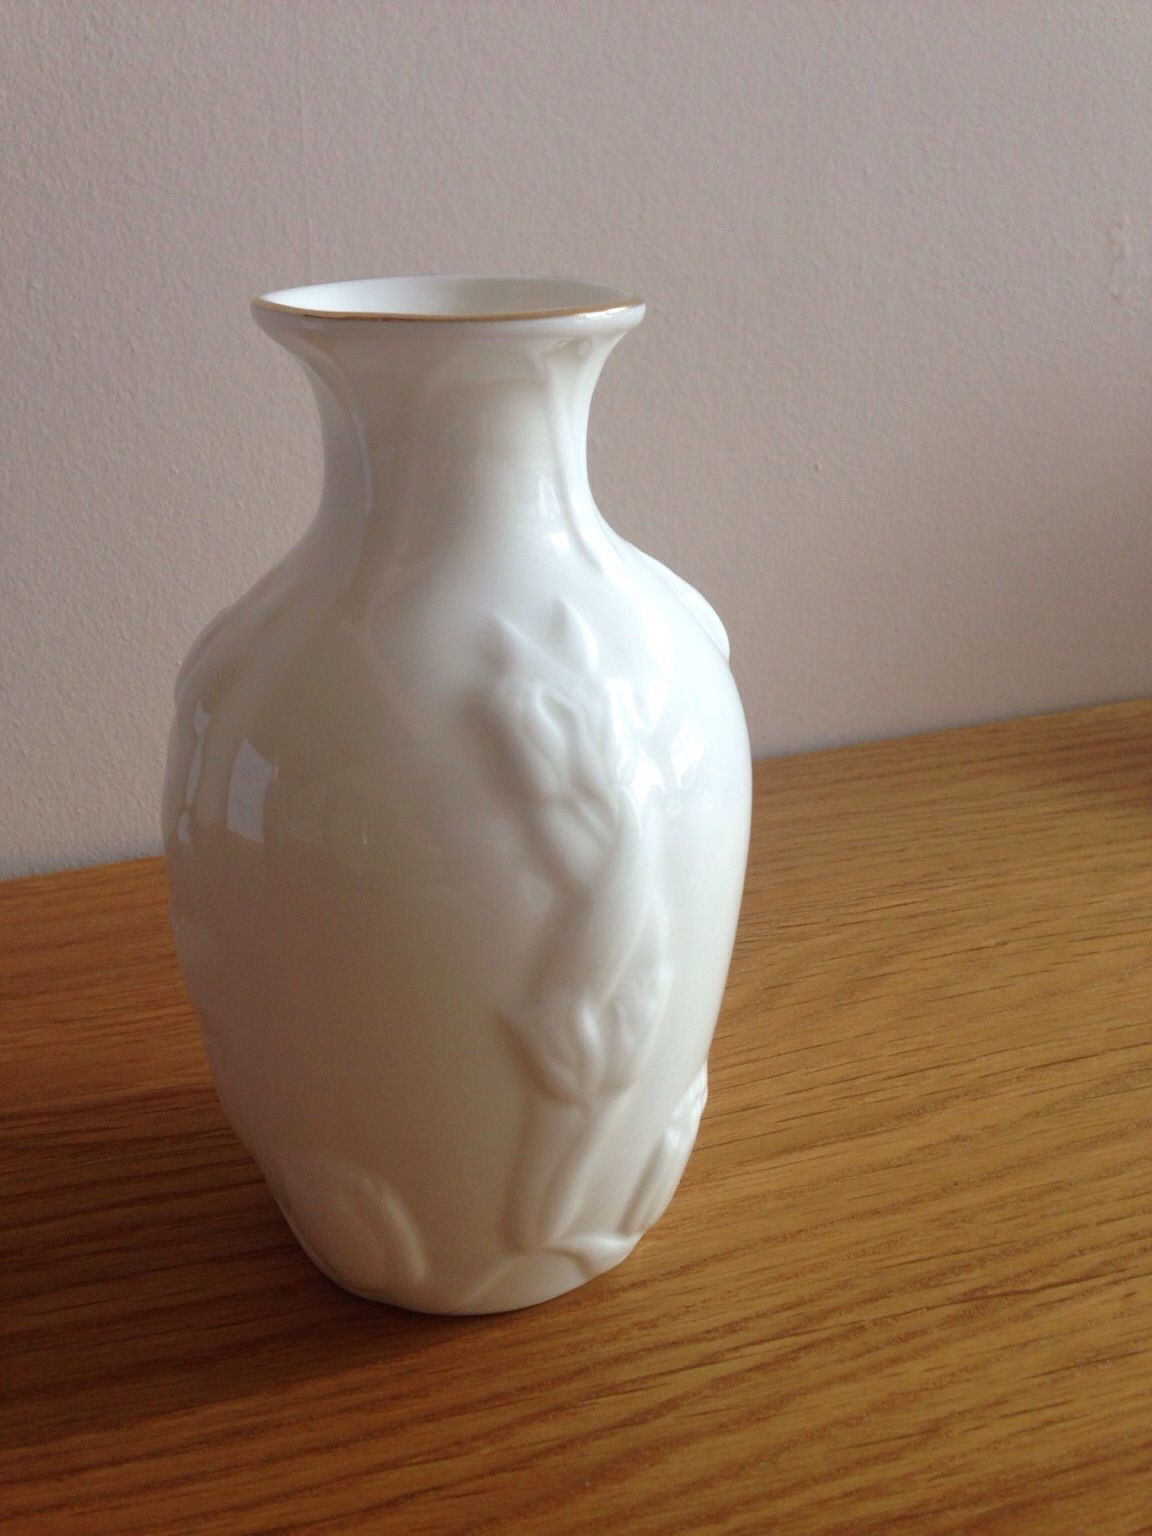 hull art pottery wildflower vase of https en shpock com i wvof20qs6wd3ur3w 2017 08 01t212817 inside lovely porcelain vase